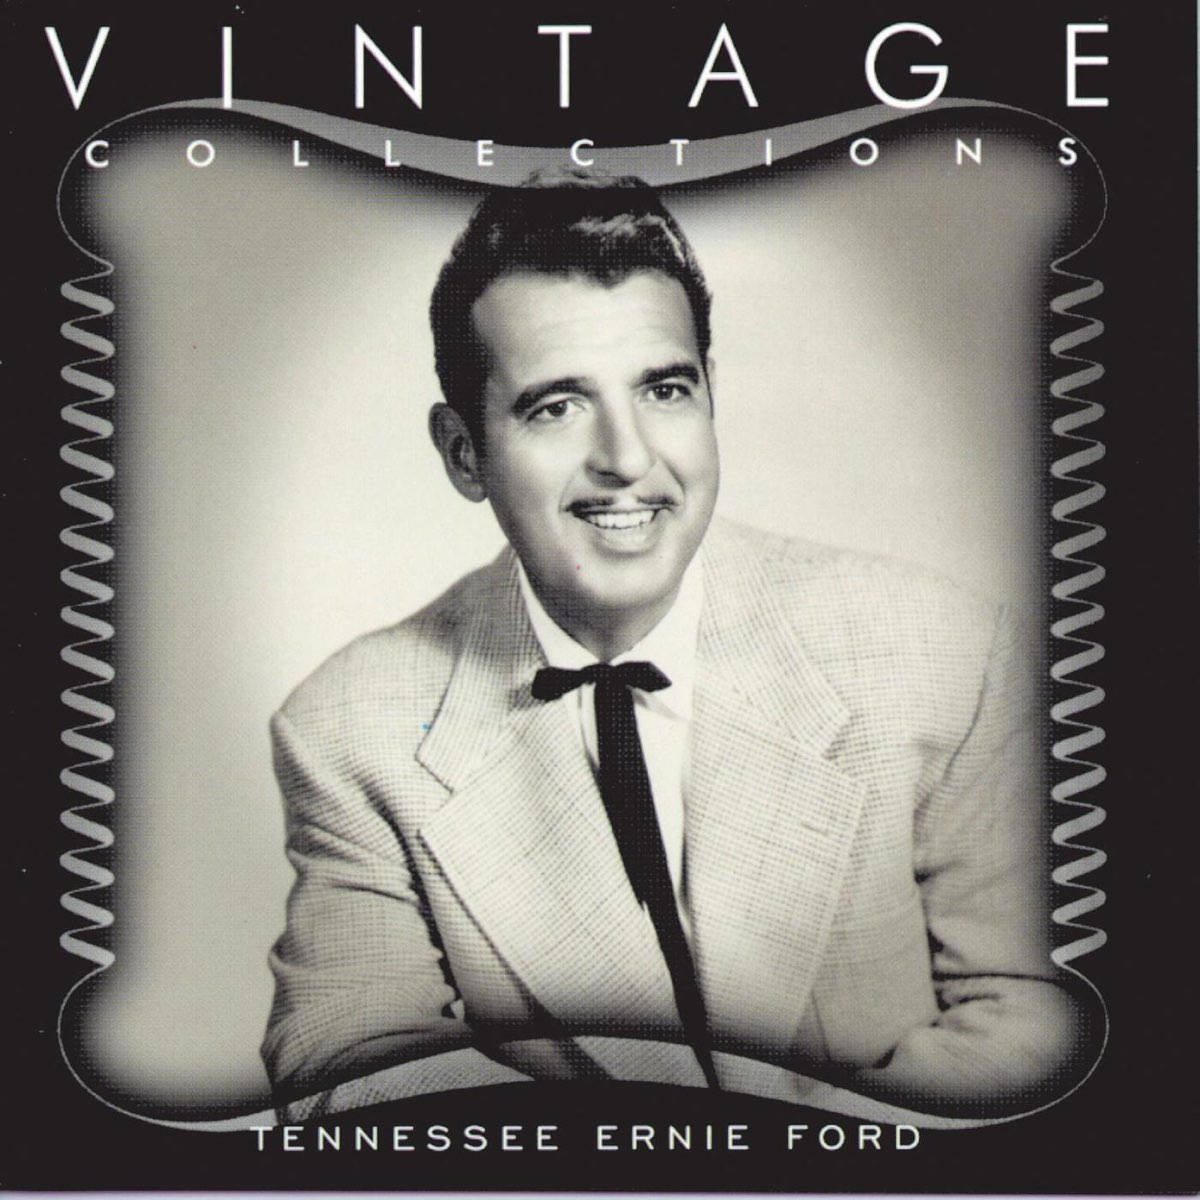 Cantanteestadounidense Tennessee Ernie Ford Para El Álbum De Colecciones Vintage Fondo de pantalla